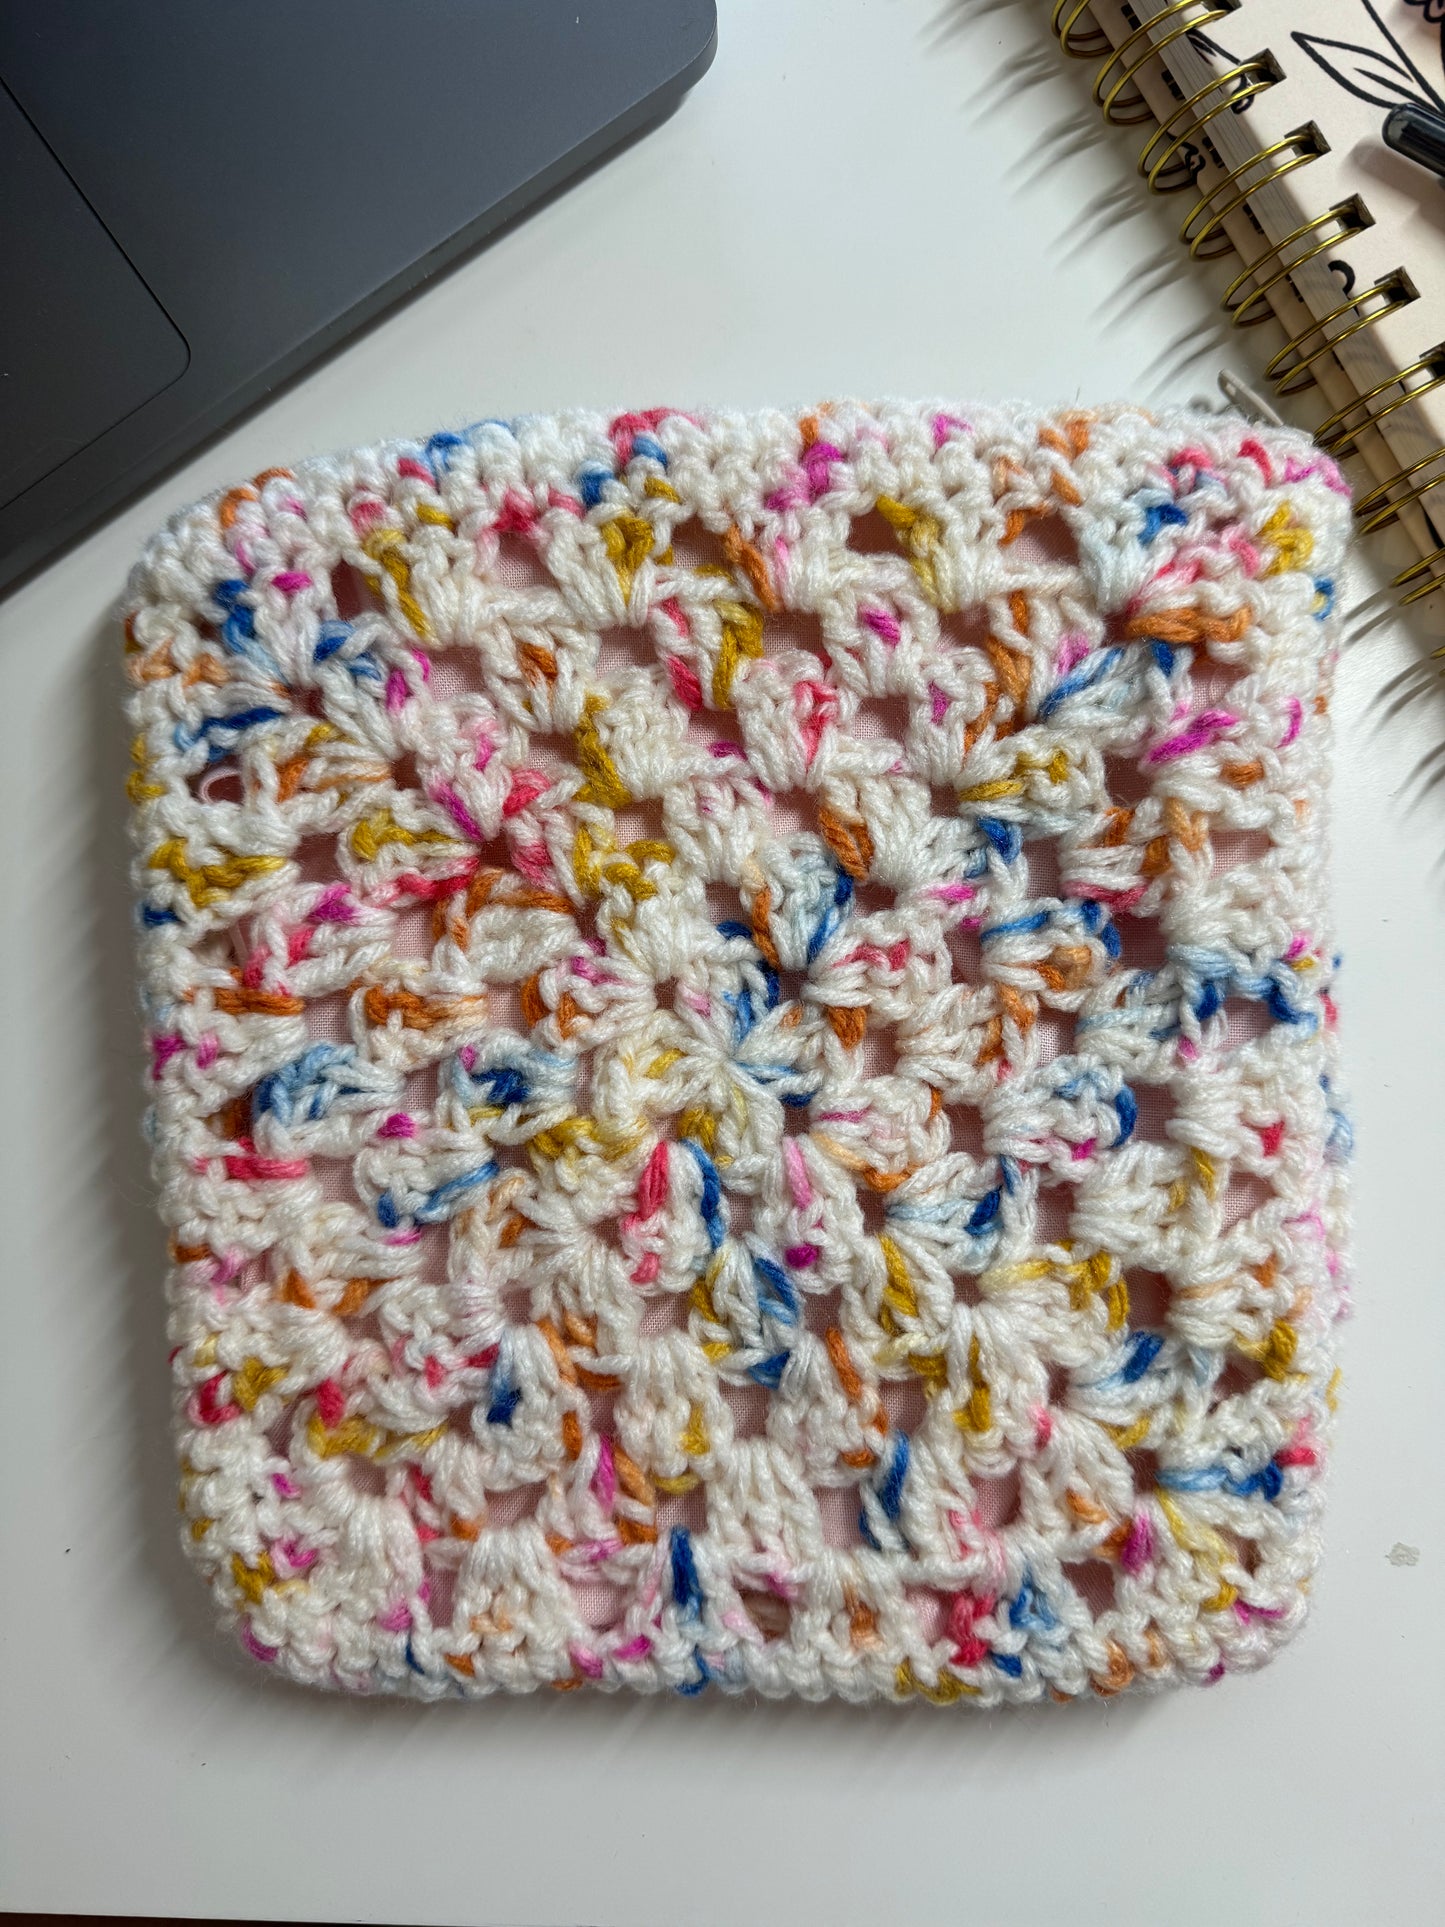 Cream Speckled Crochet Zipper Pouch